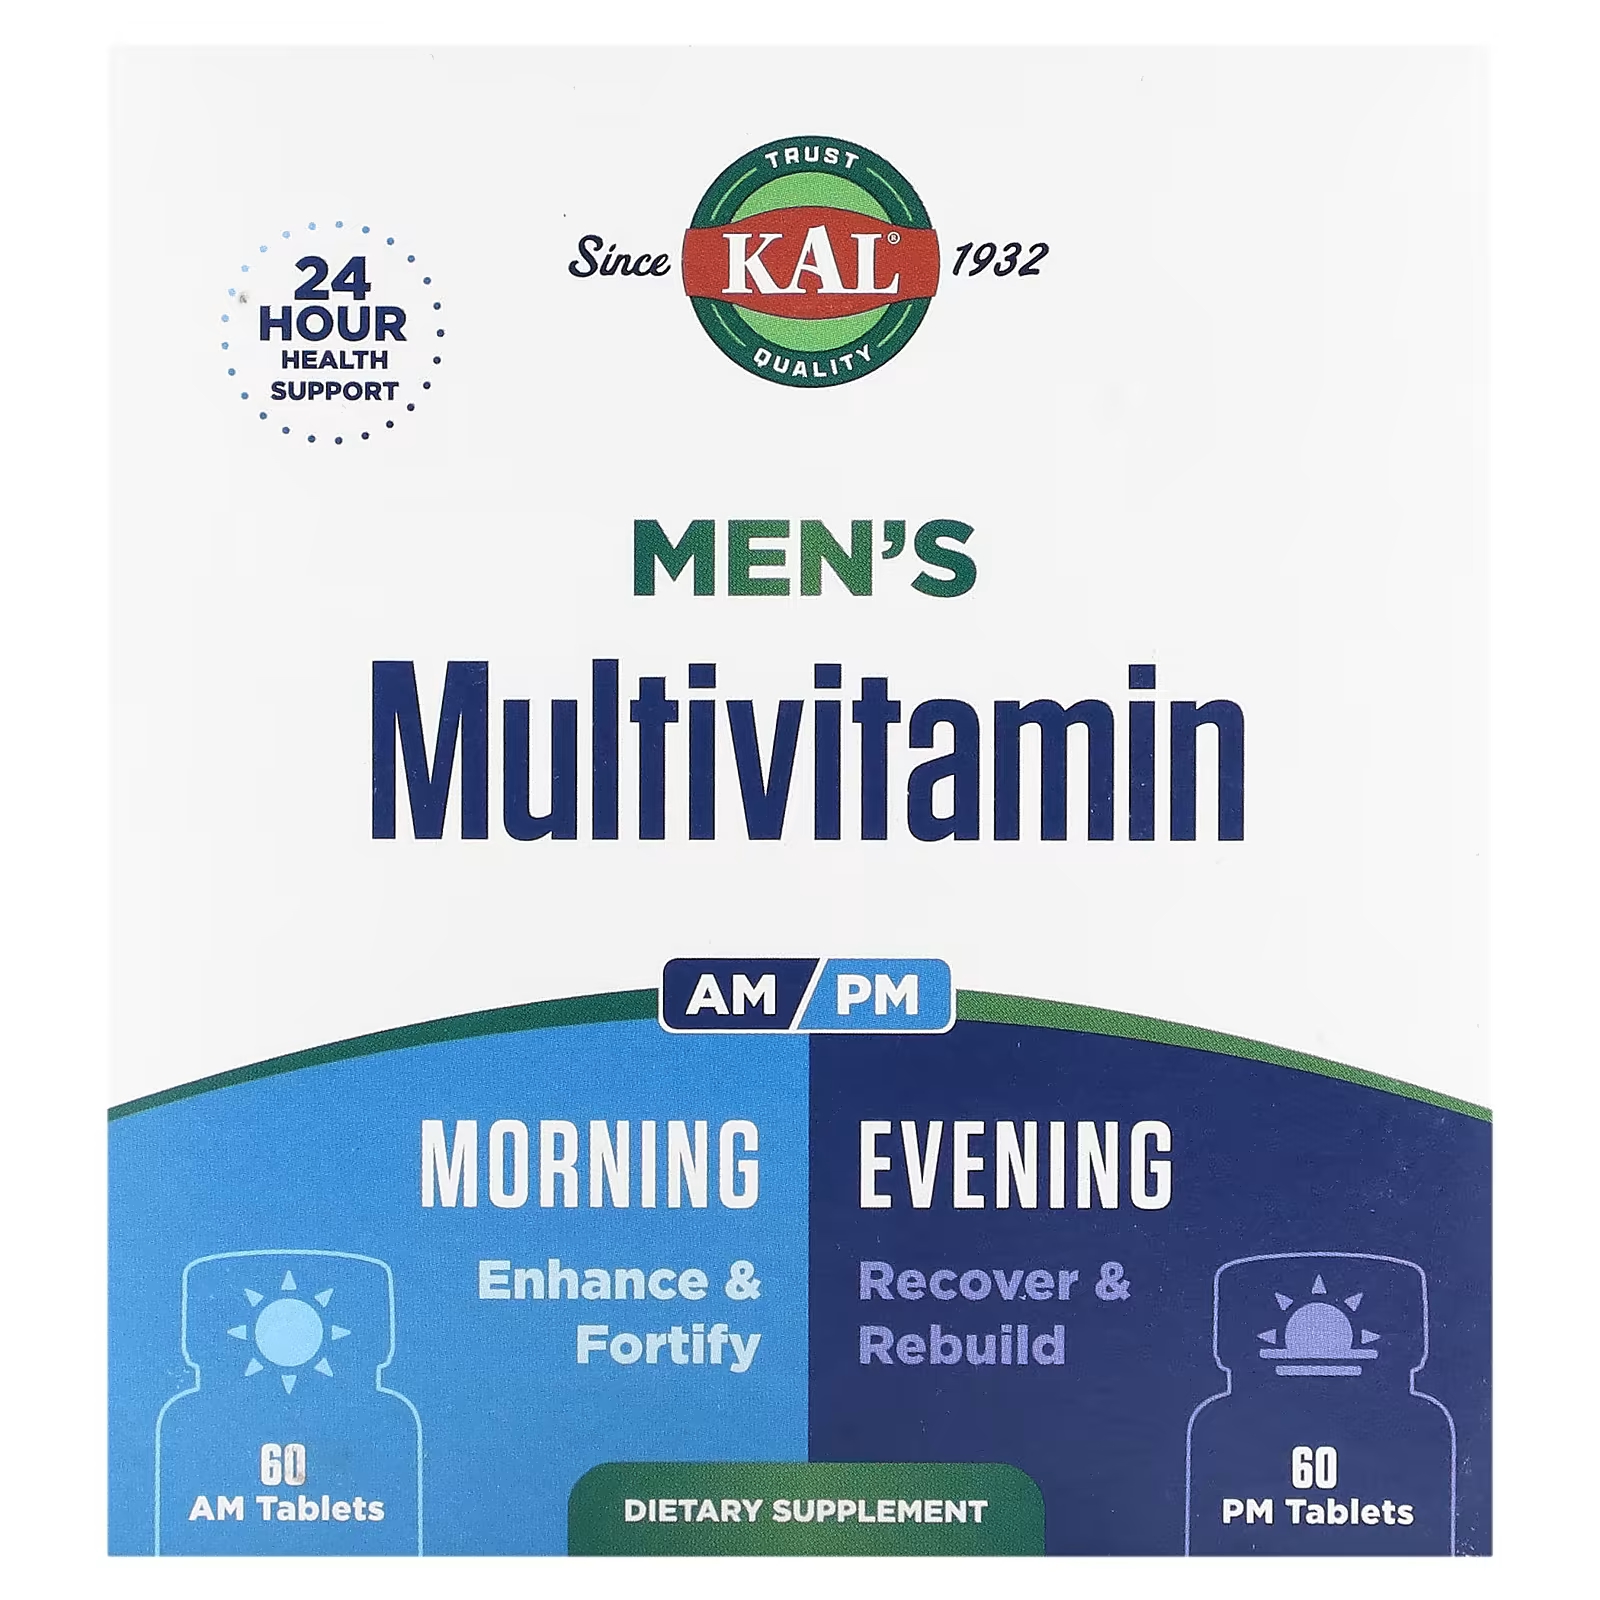 Мультивитамины мужские утром и вечером Kal, 2 упаковки по 60 таблеток kal мультивитамины для женщин старше 50 лет утром и вечером 2 пакетика 60 таблеток в каждом